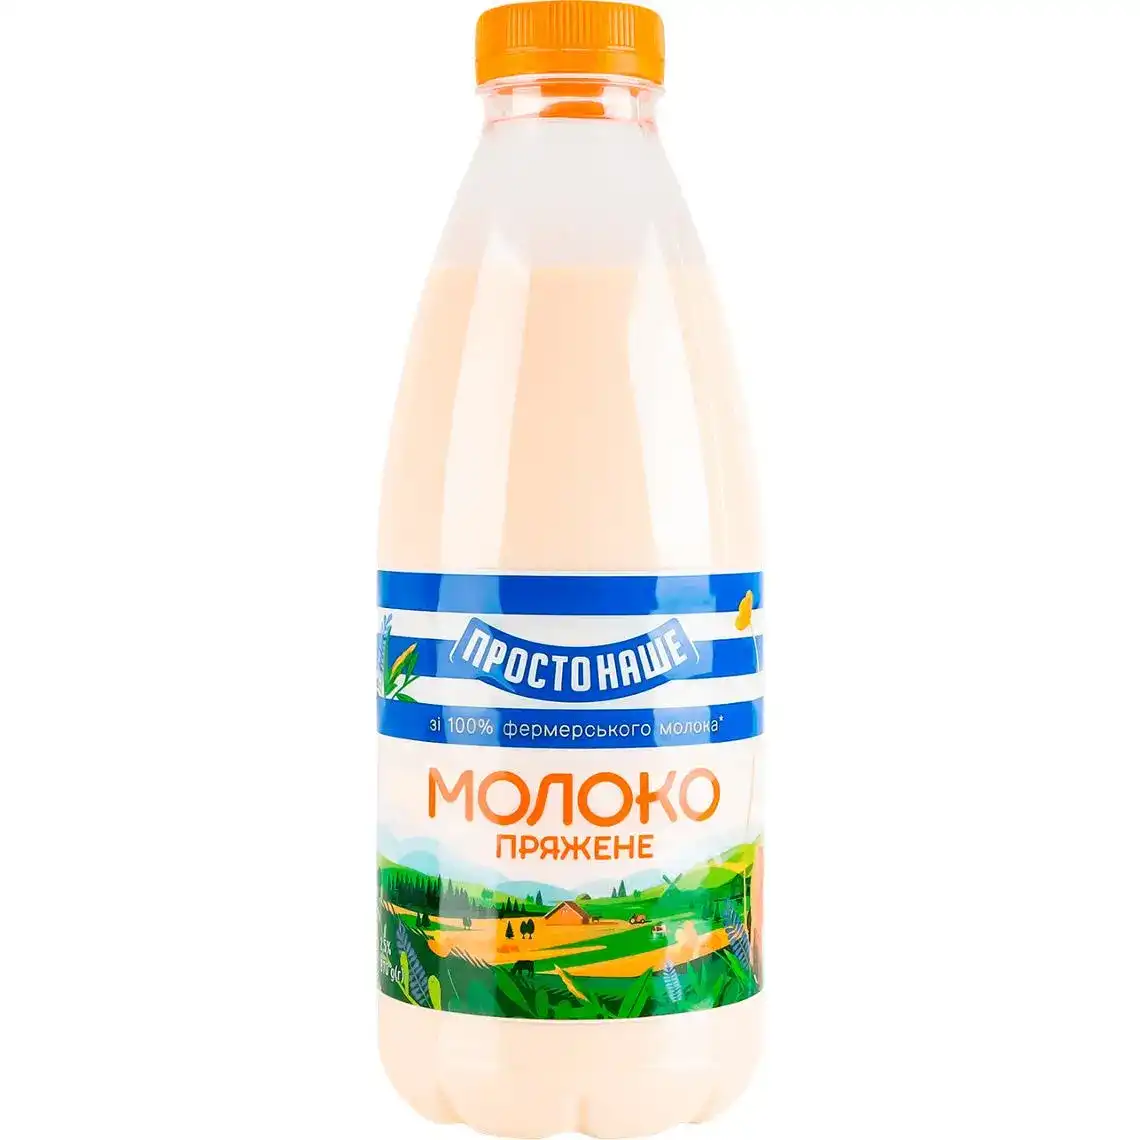 Молоко ПростоНаше 2.5% пряжене 870 г